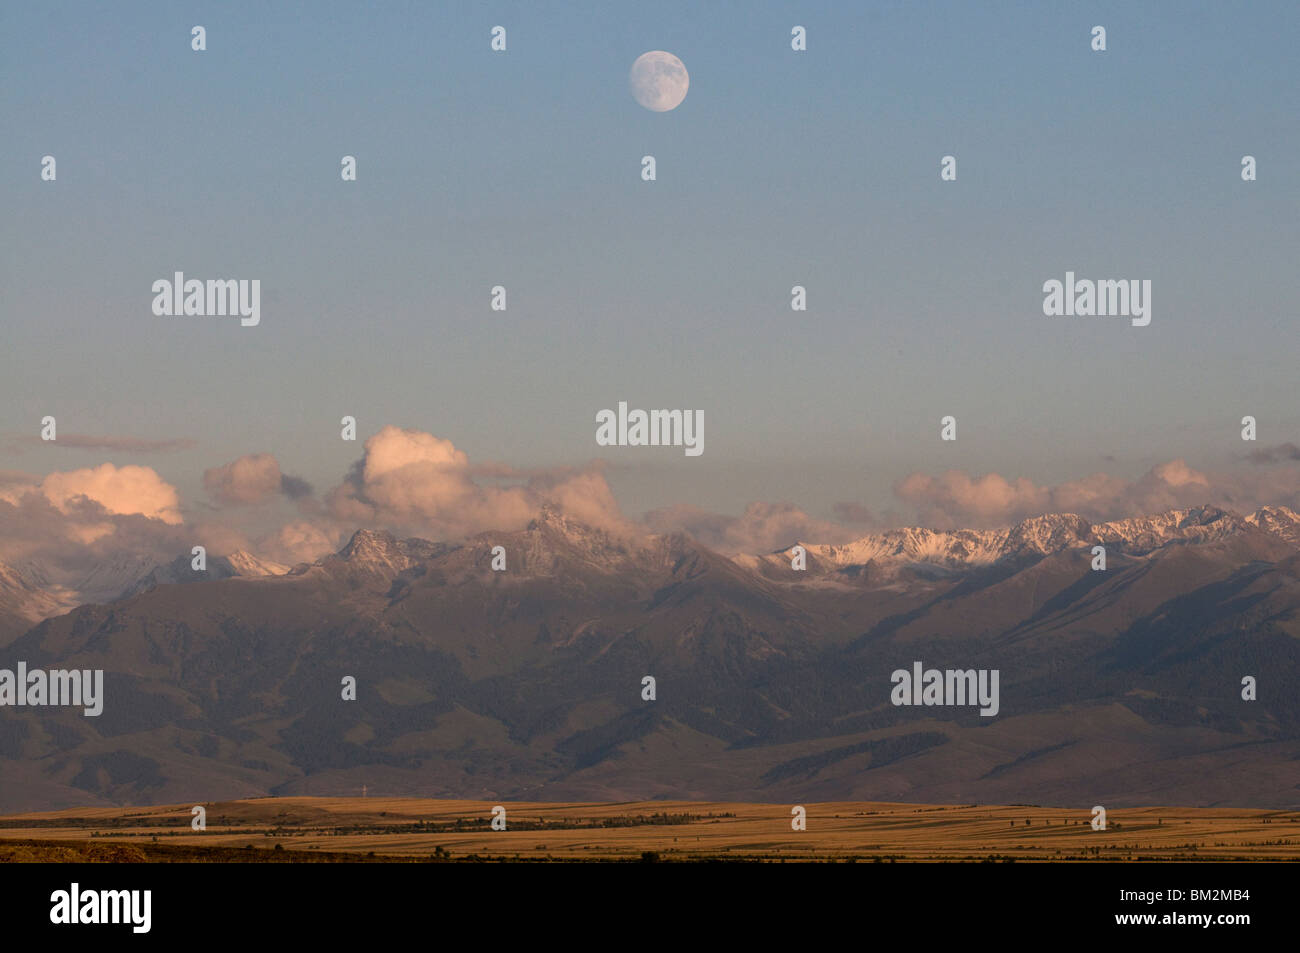 Luna llena por encima de la cordillera de Tian Shan central, Kirguistán Foto de stock